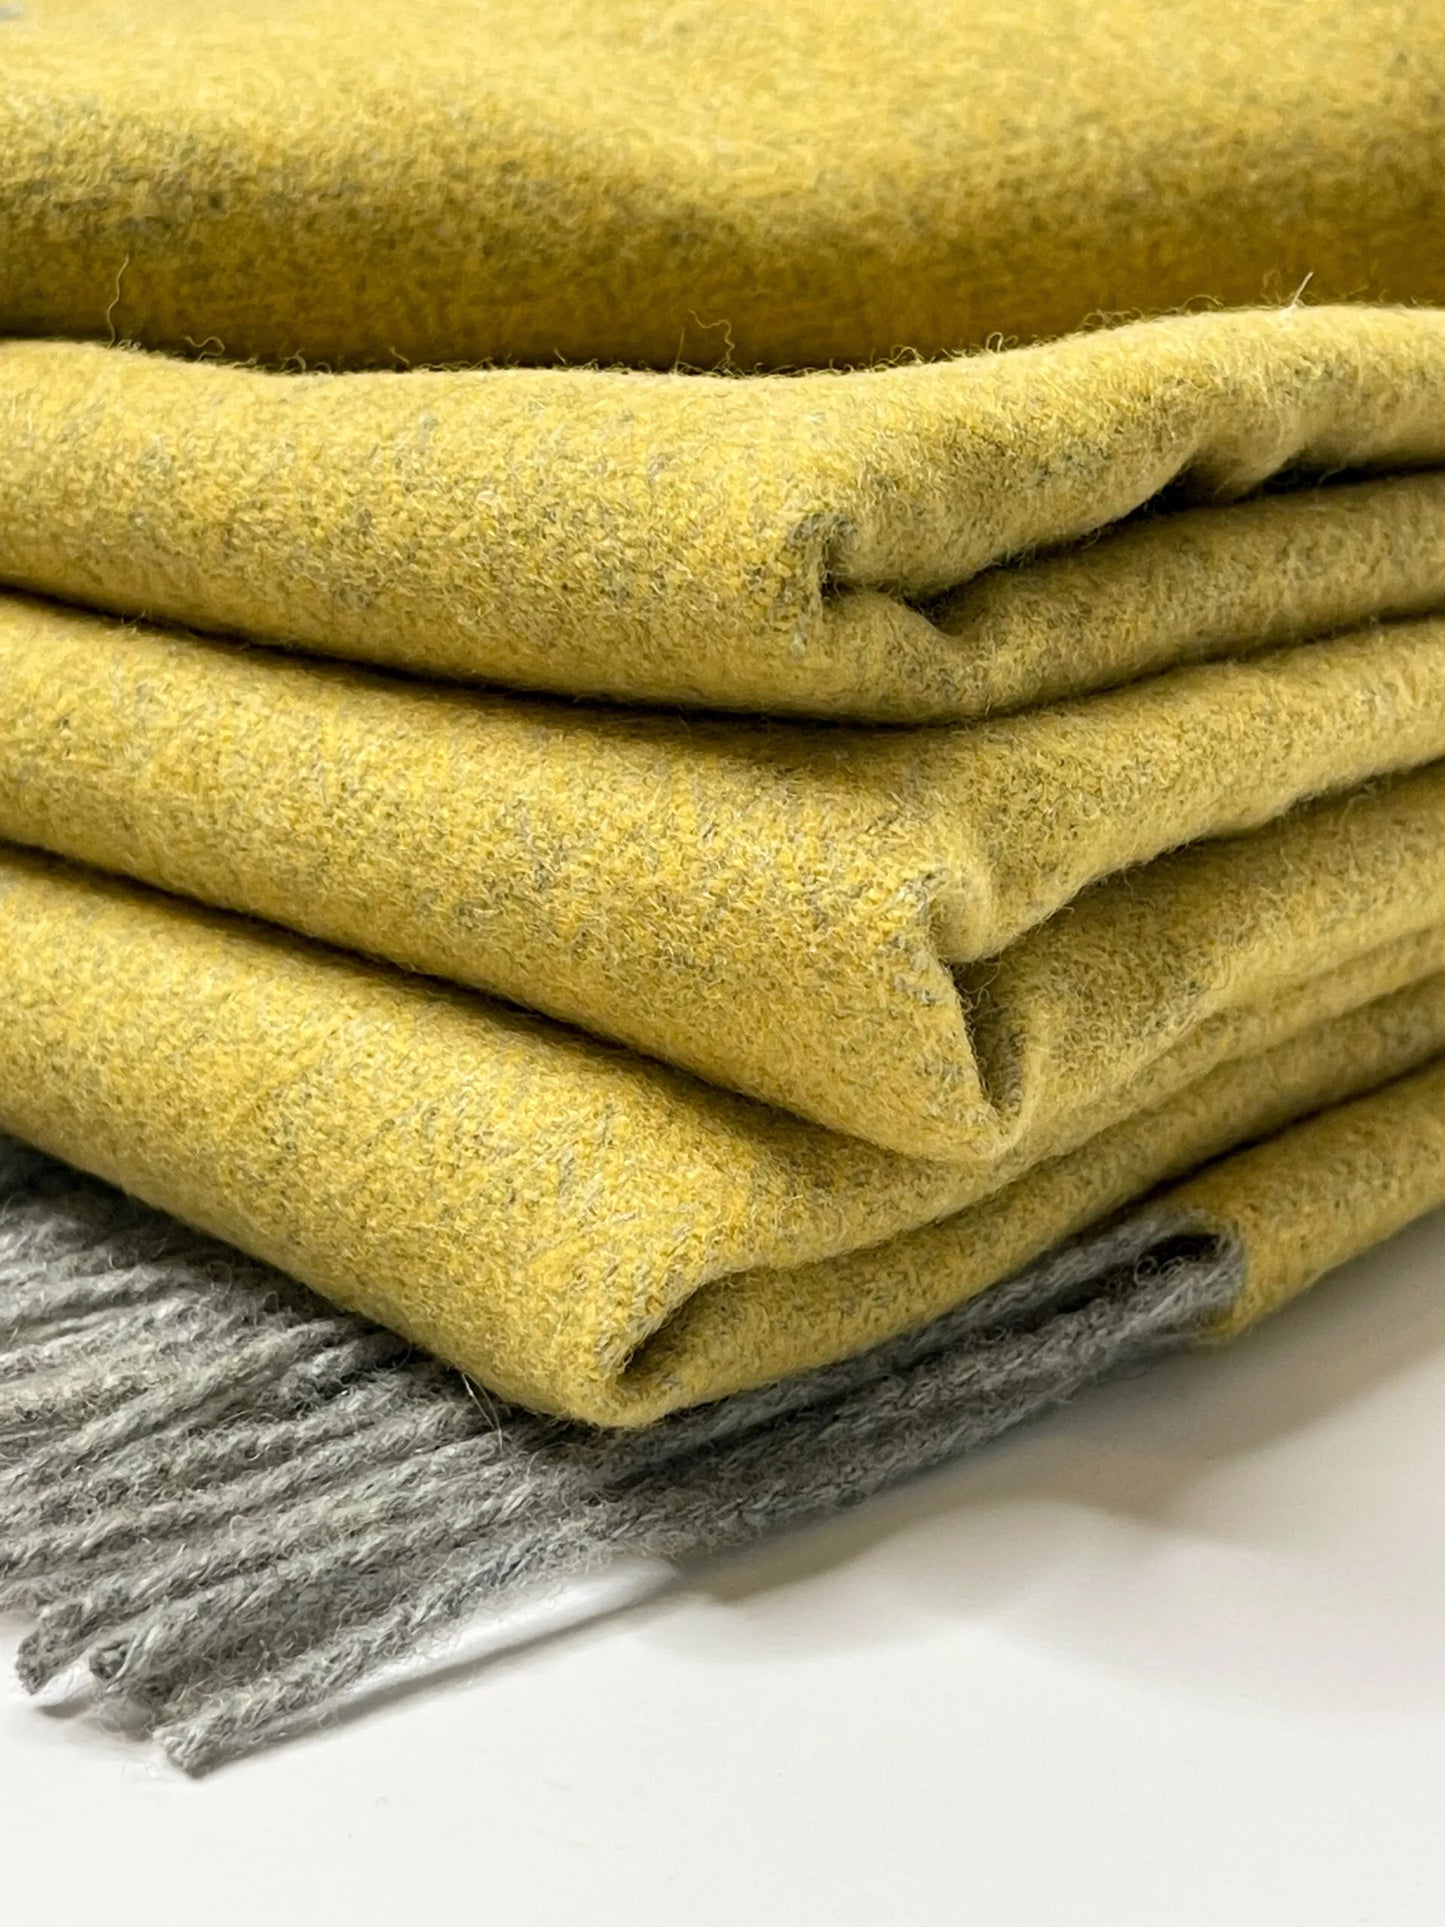 Merino and cashmere wool blanket "Yellow"